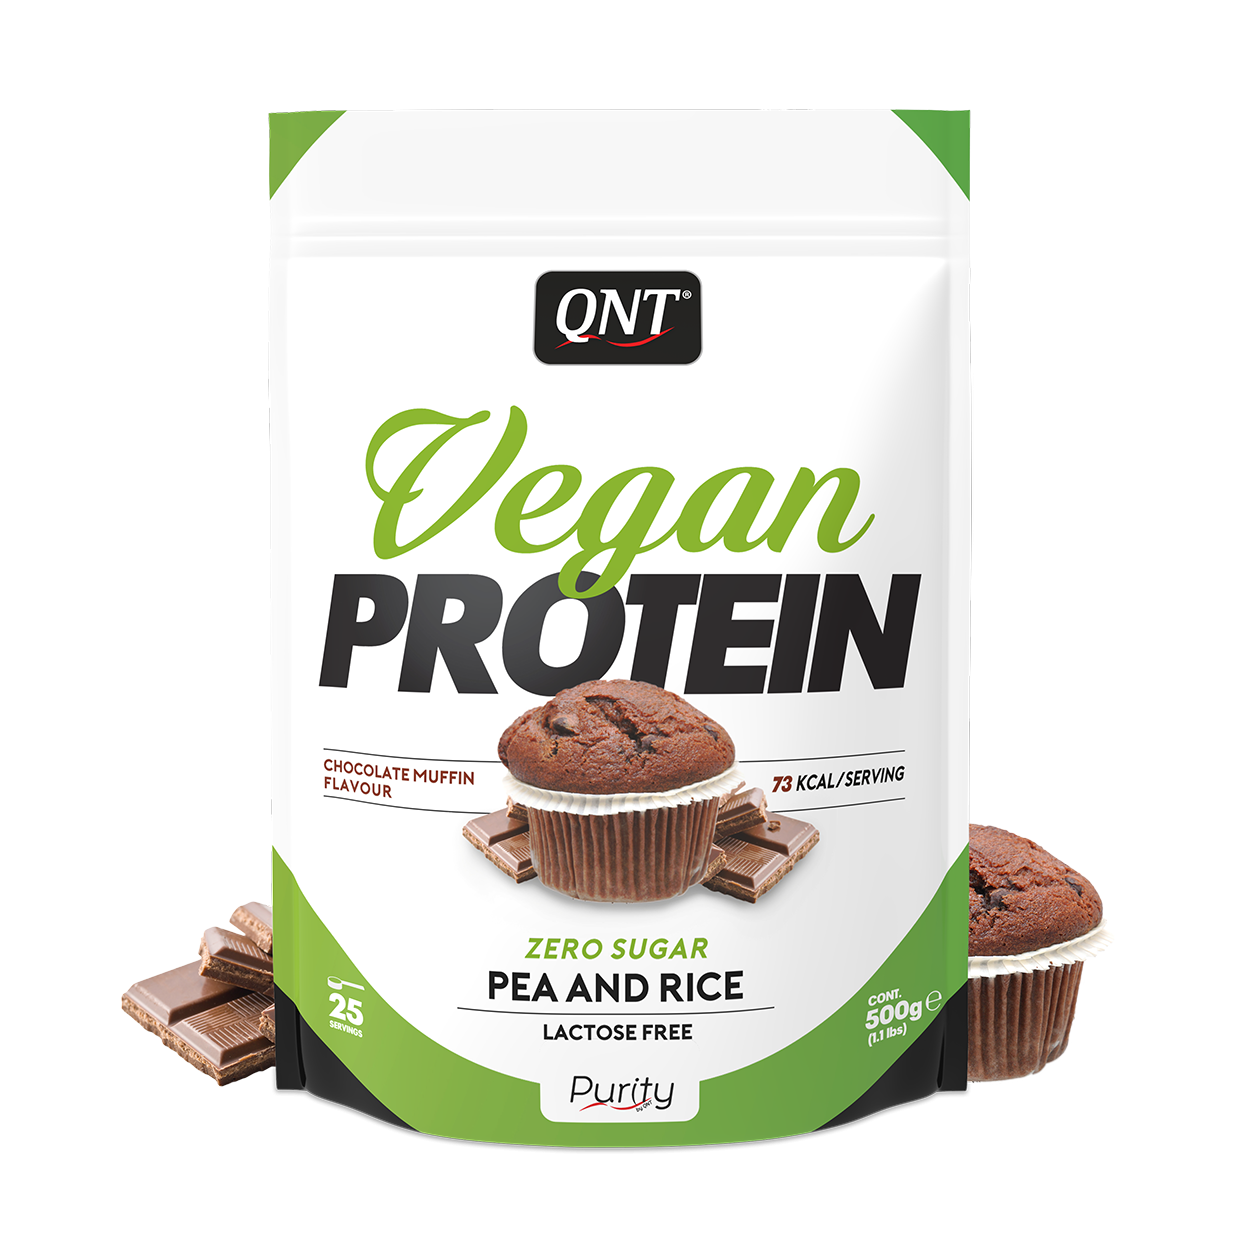 Протеин vegan protein 500g